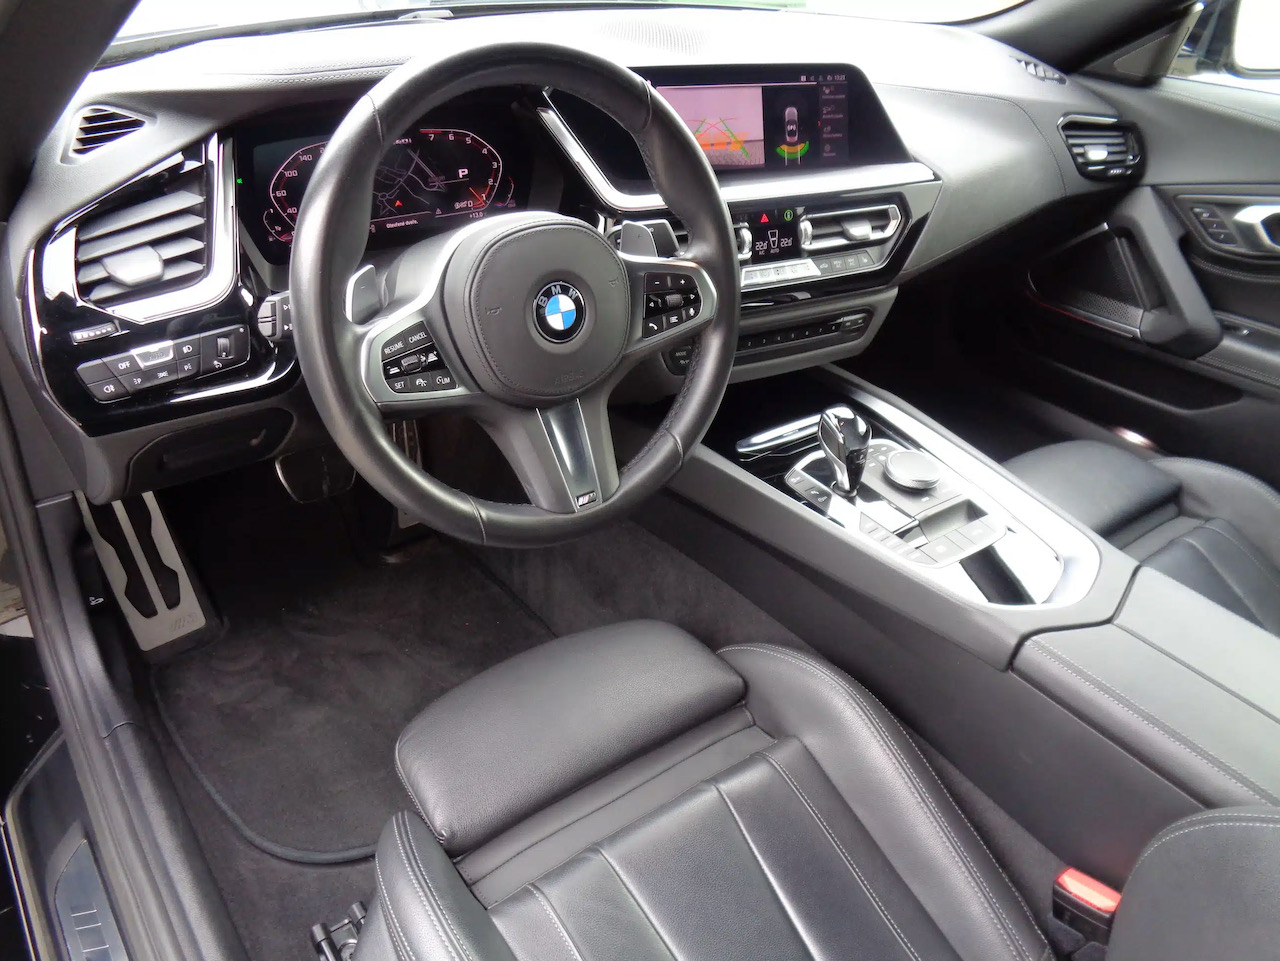 BMW Z4 M40i | předváděcí auto skladem | roadster | V6 benzin 340 koní | skvělá výbava | nákup online | super cena  |  AUTOiBUY.com